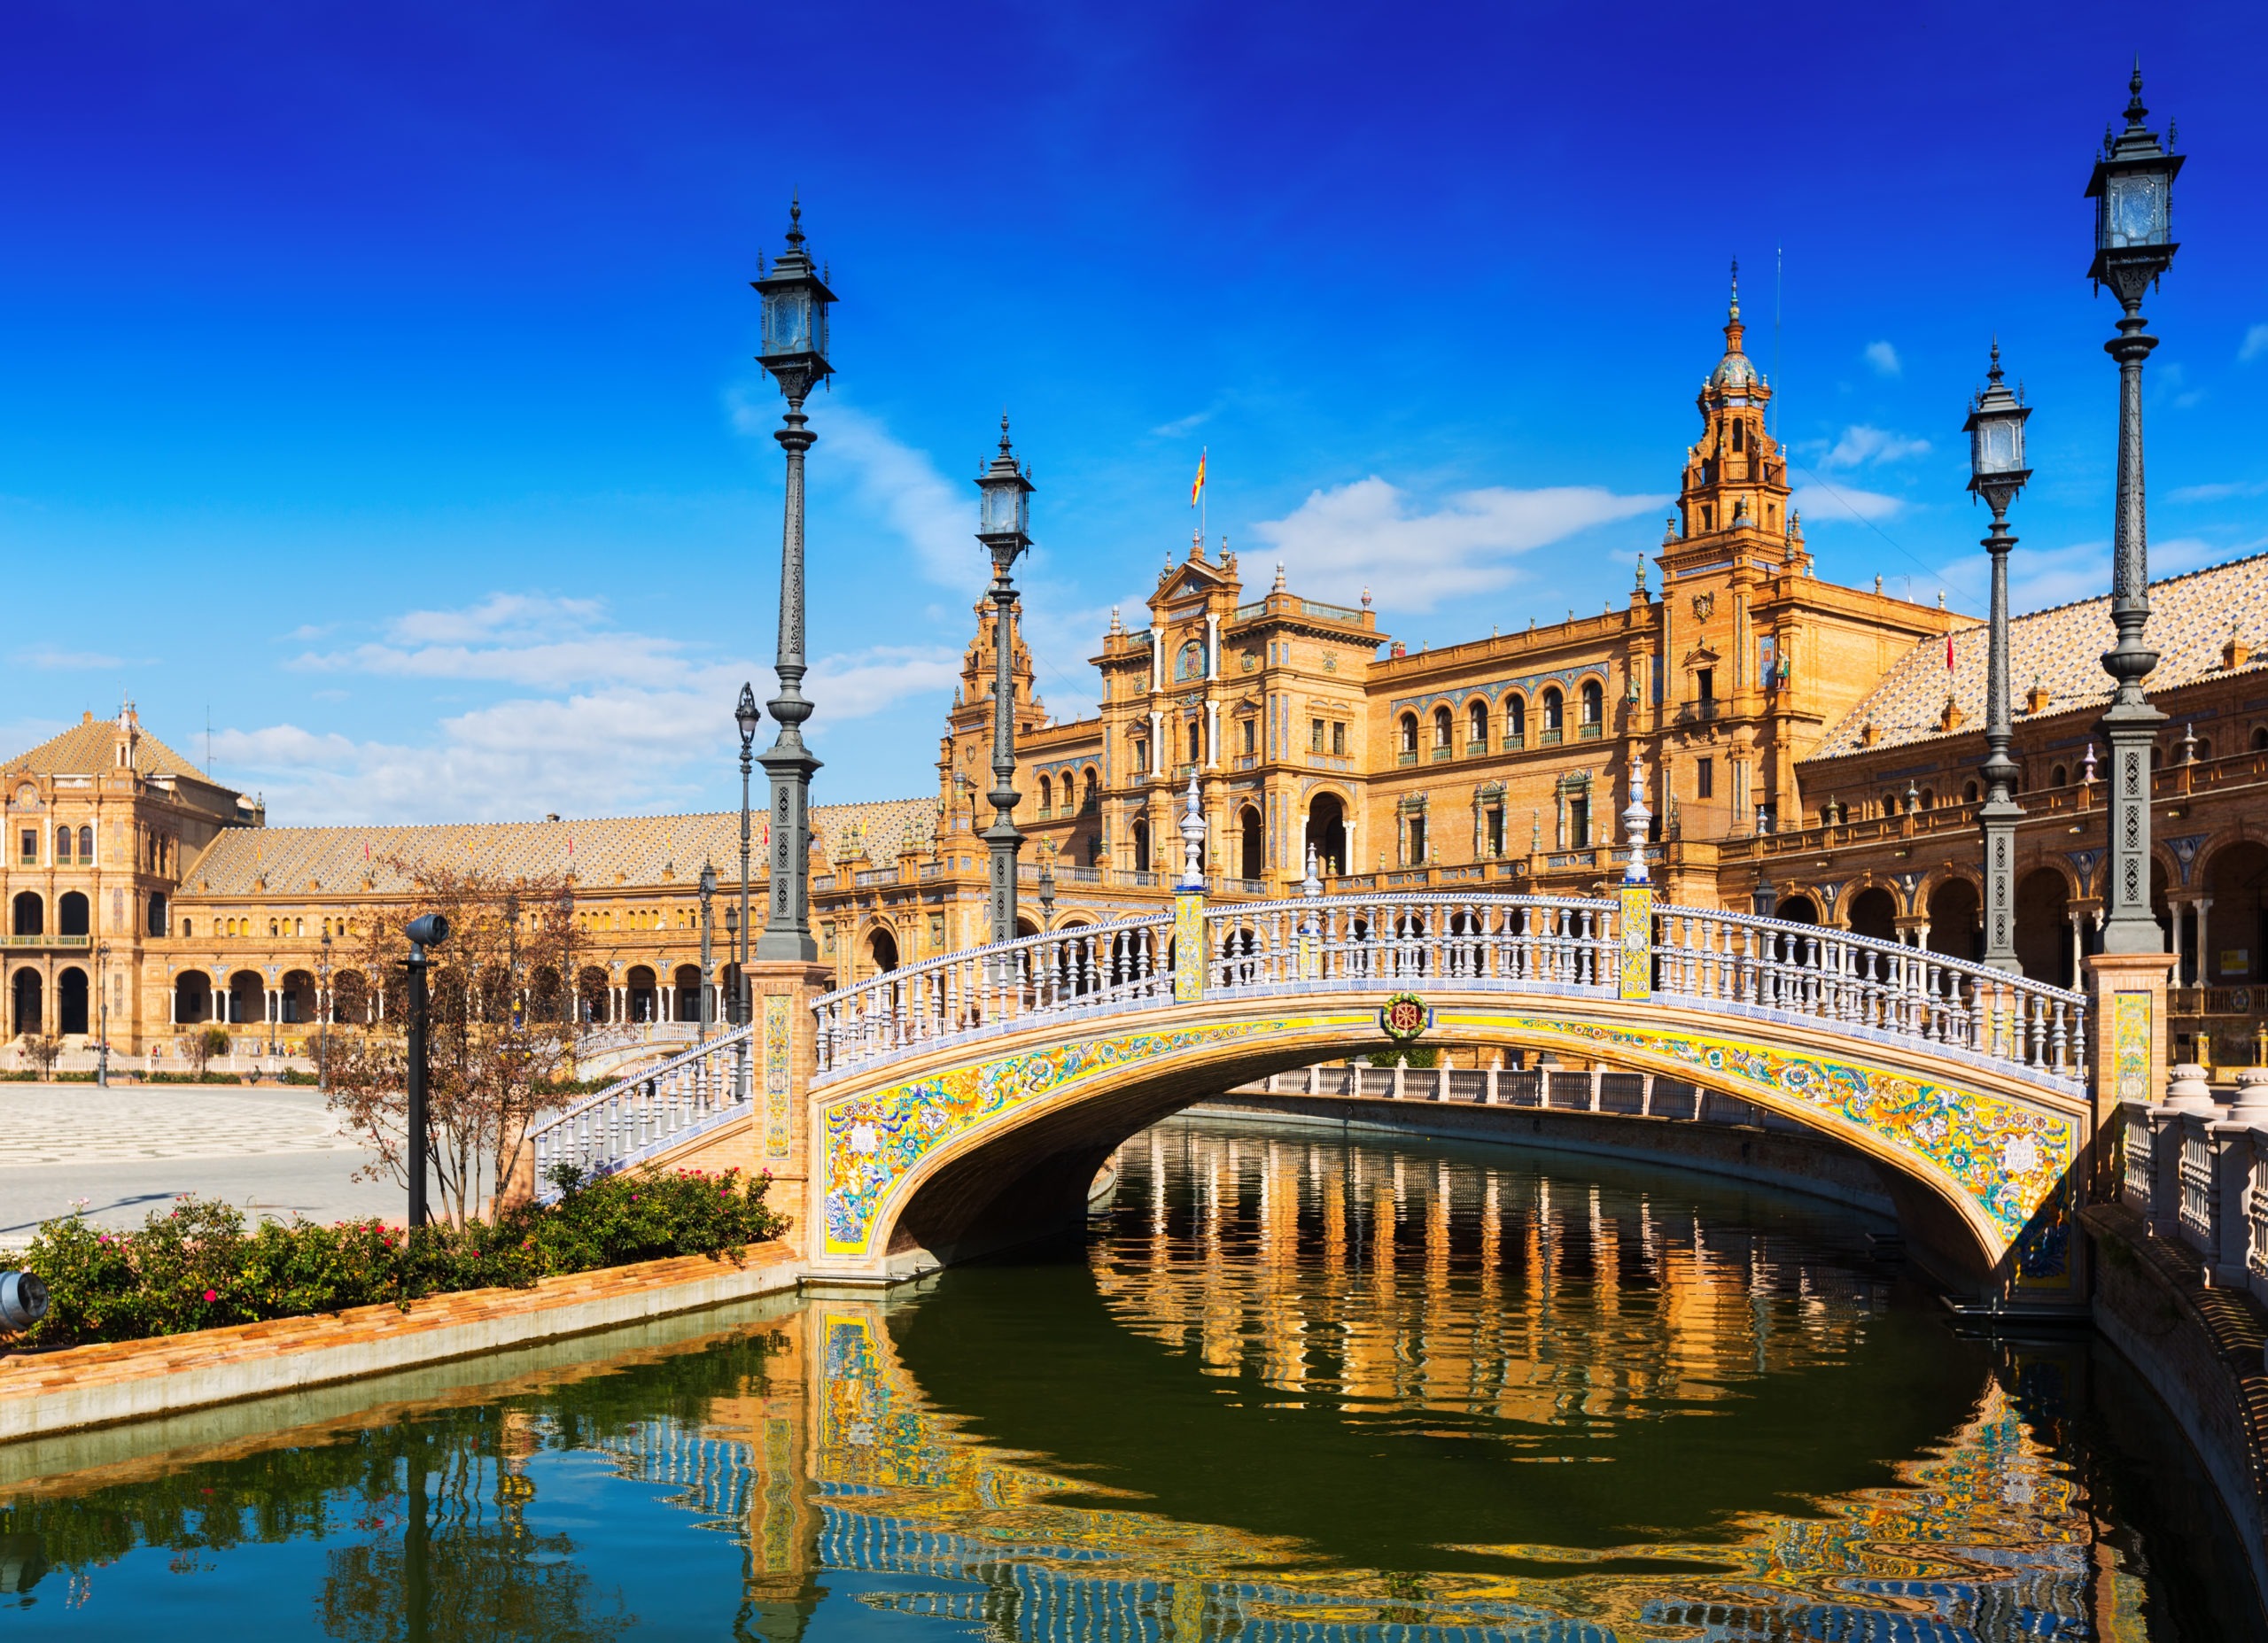 Day  view of Plaza de Espana with bridges. Seville, Spain